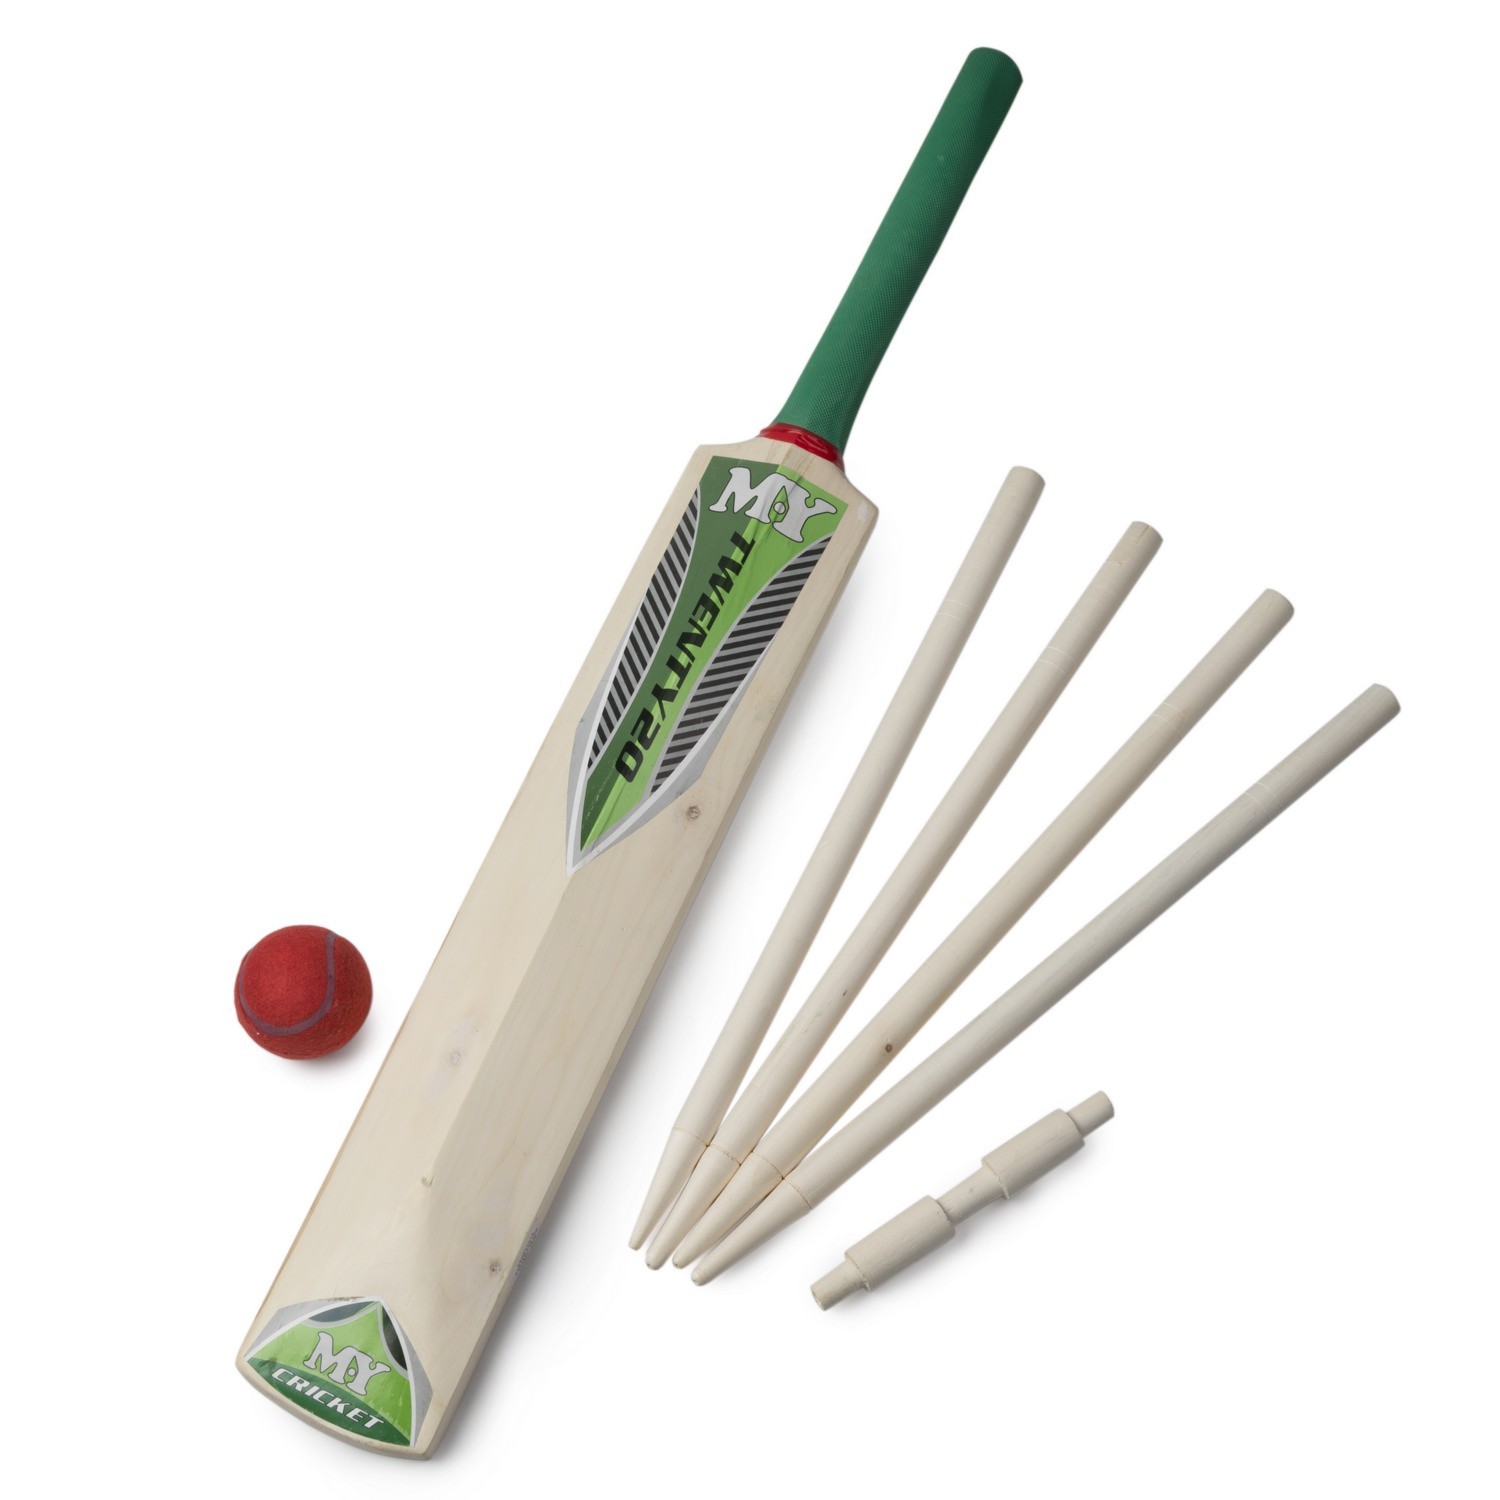 M.Y Cricket Set Image 1